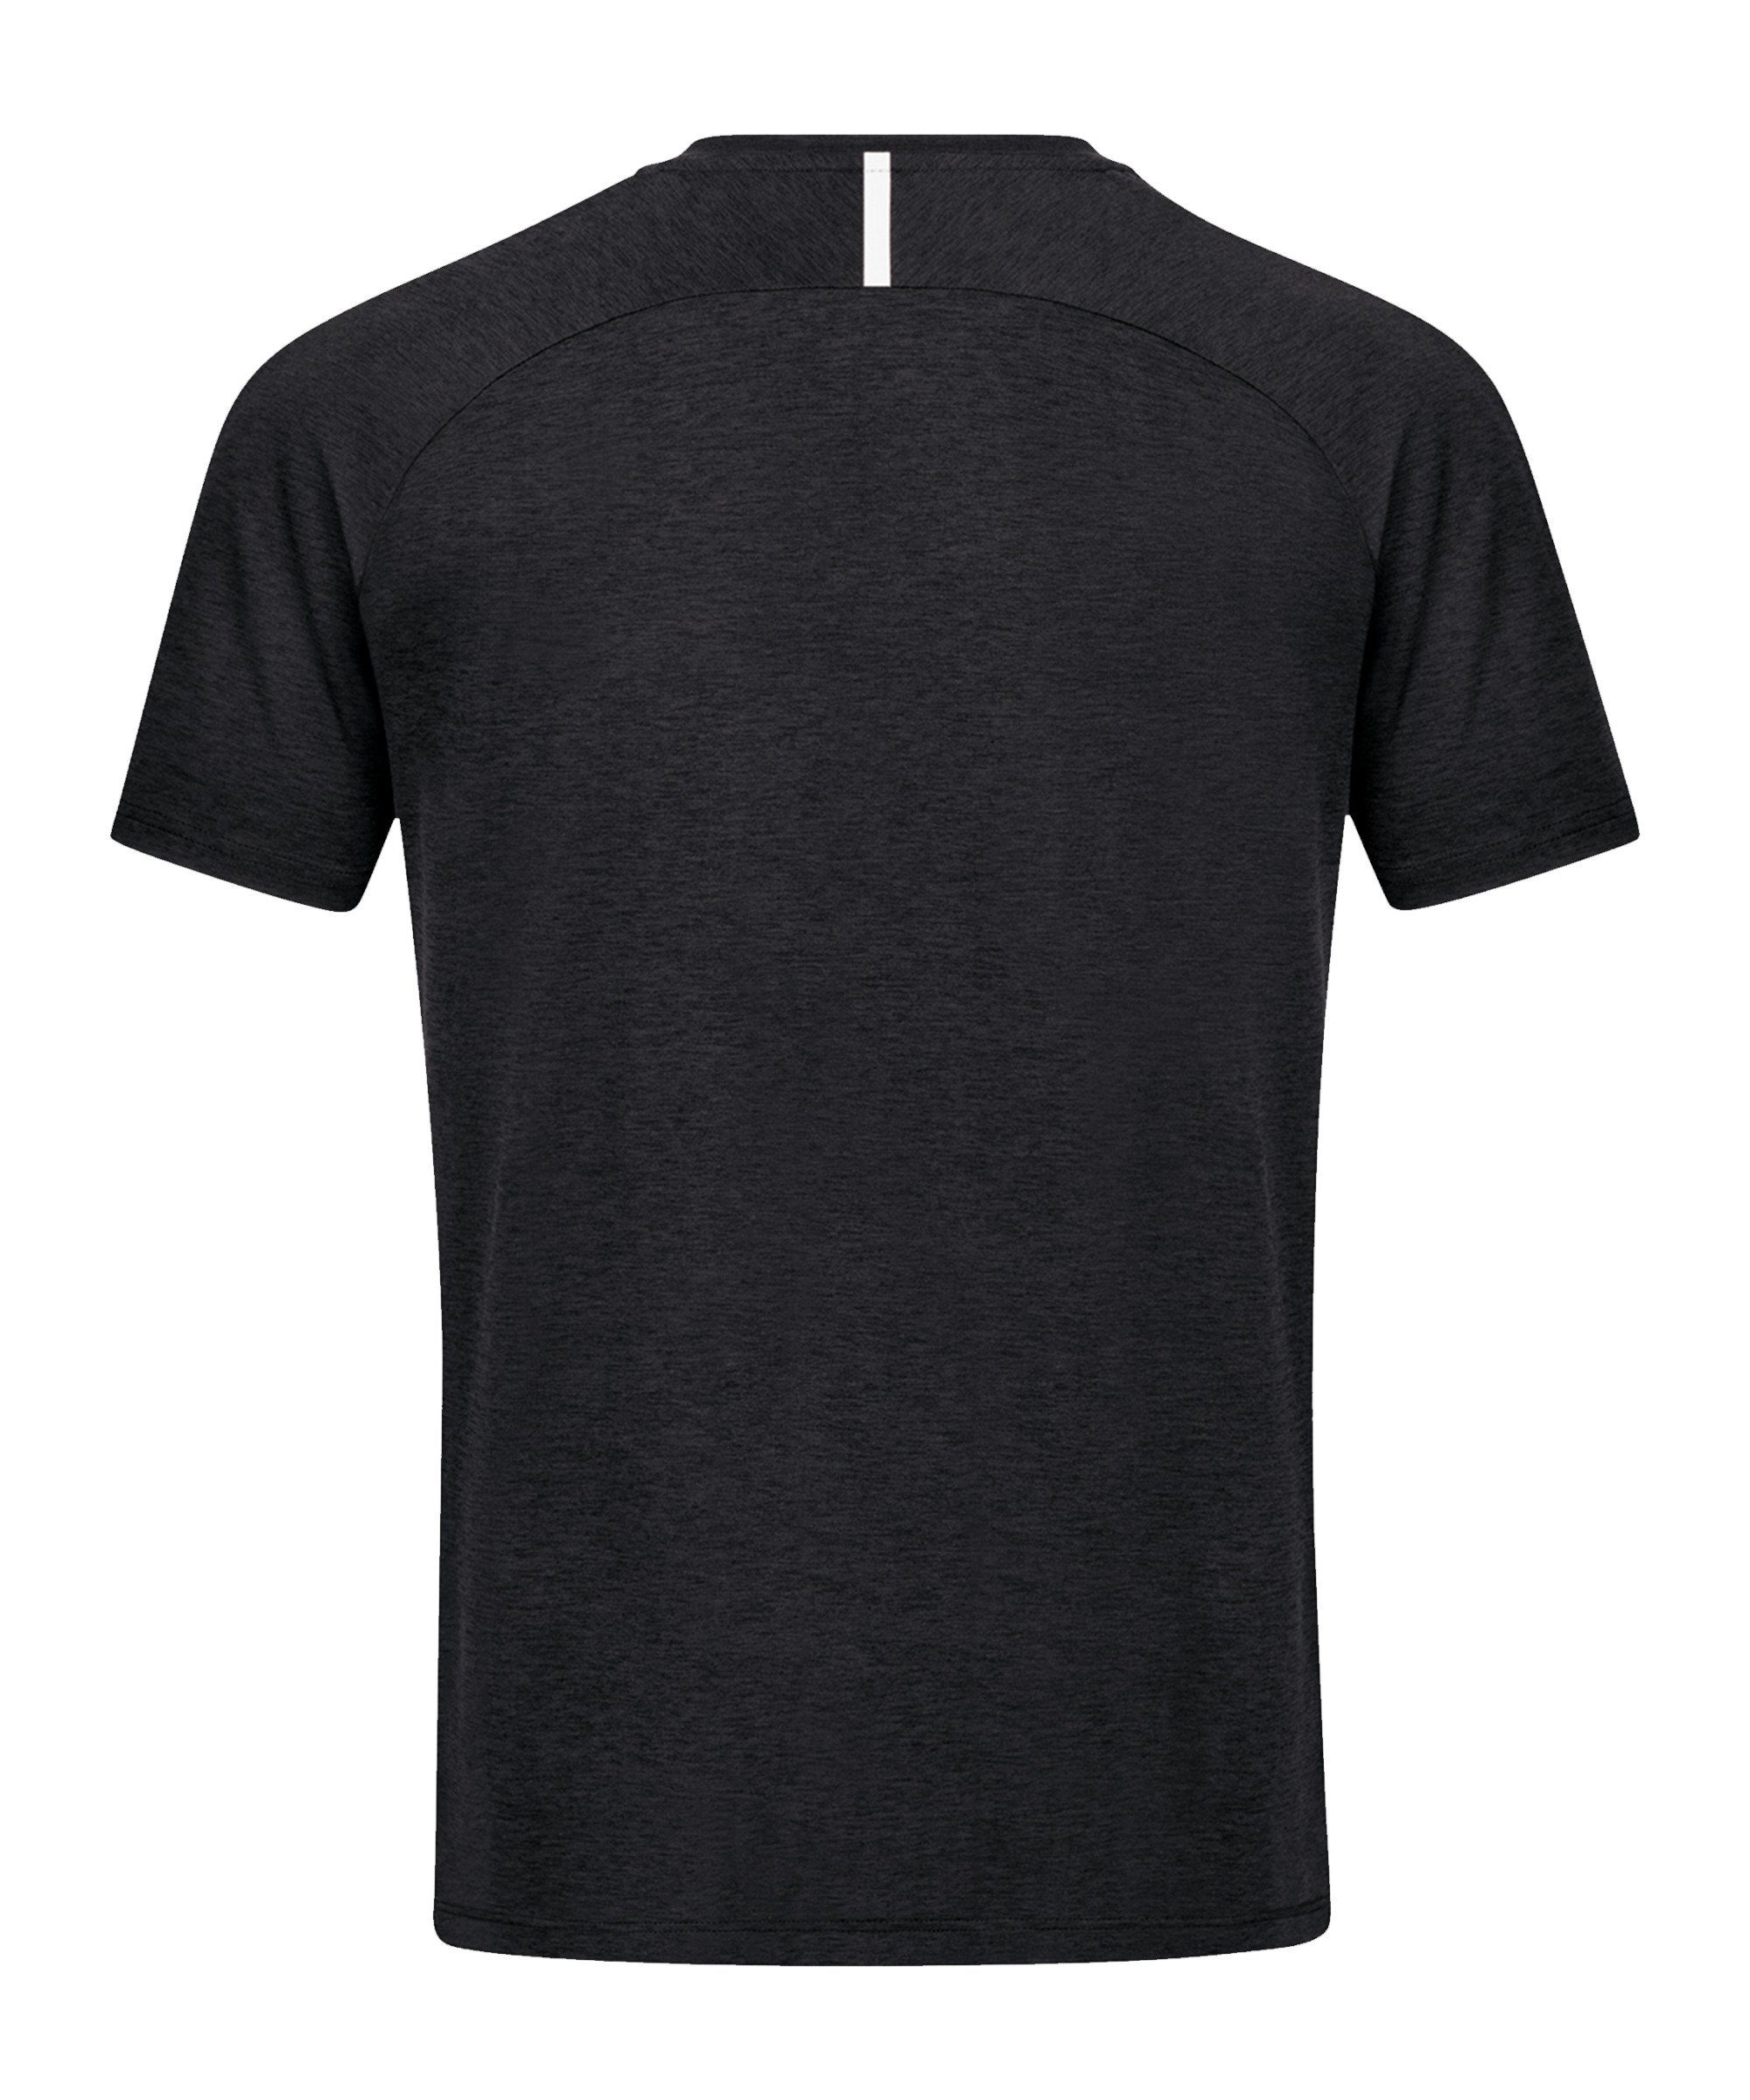 T-Shirt schwarzweiss Challenge Freizeit default T-Shirt Jako